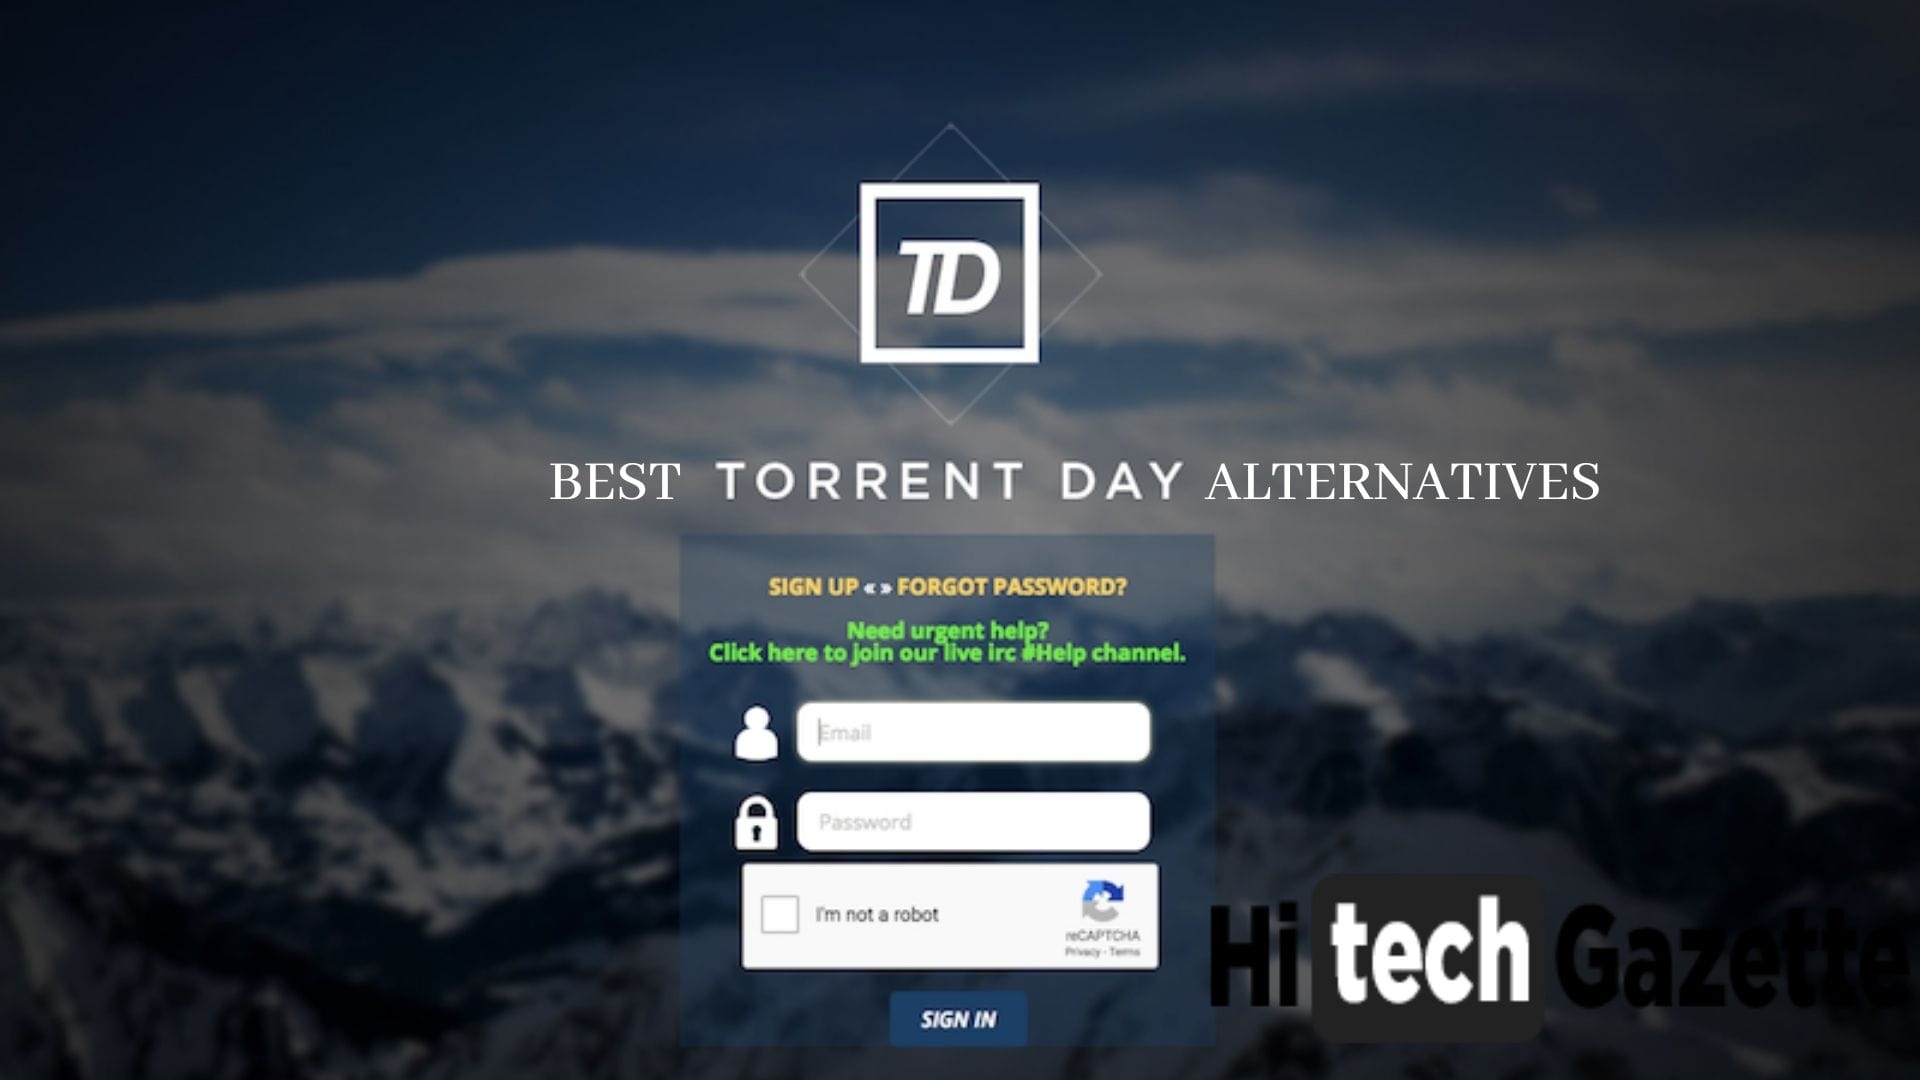 torrentday alternatives